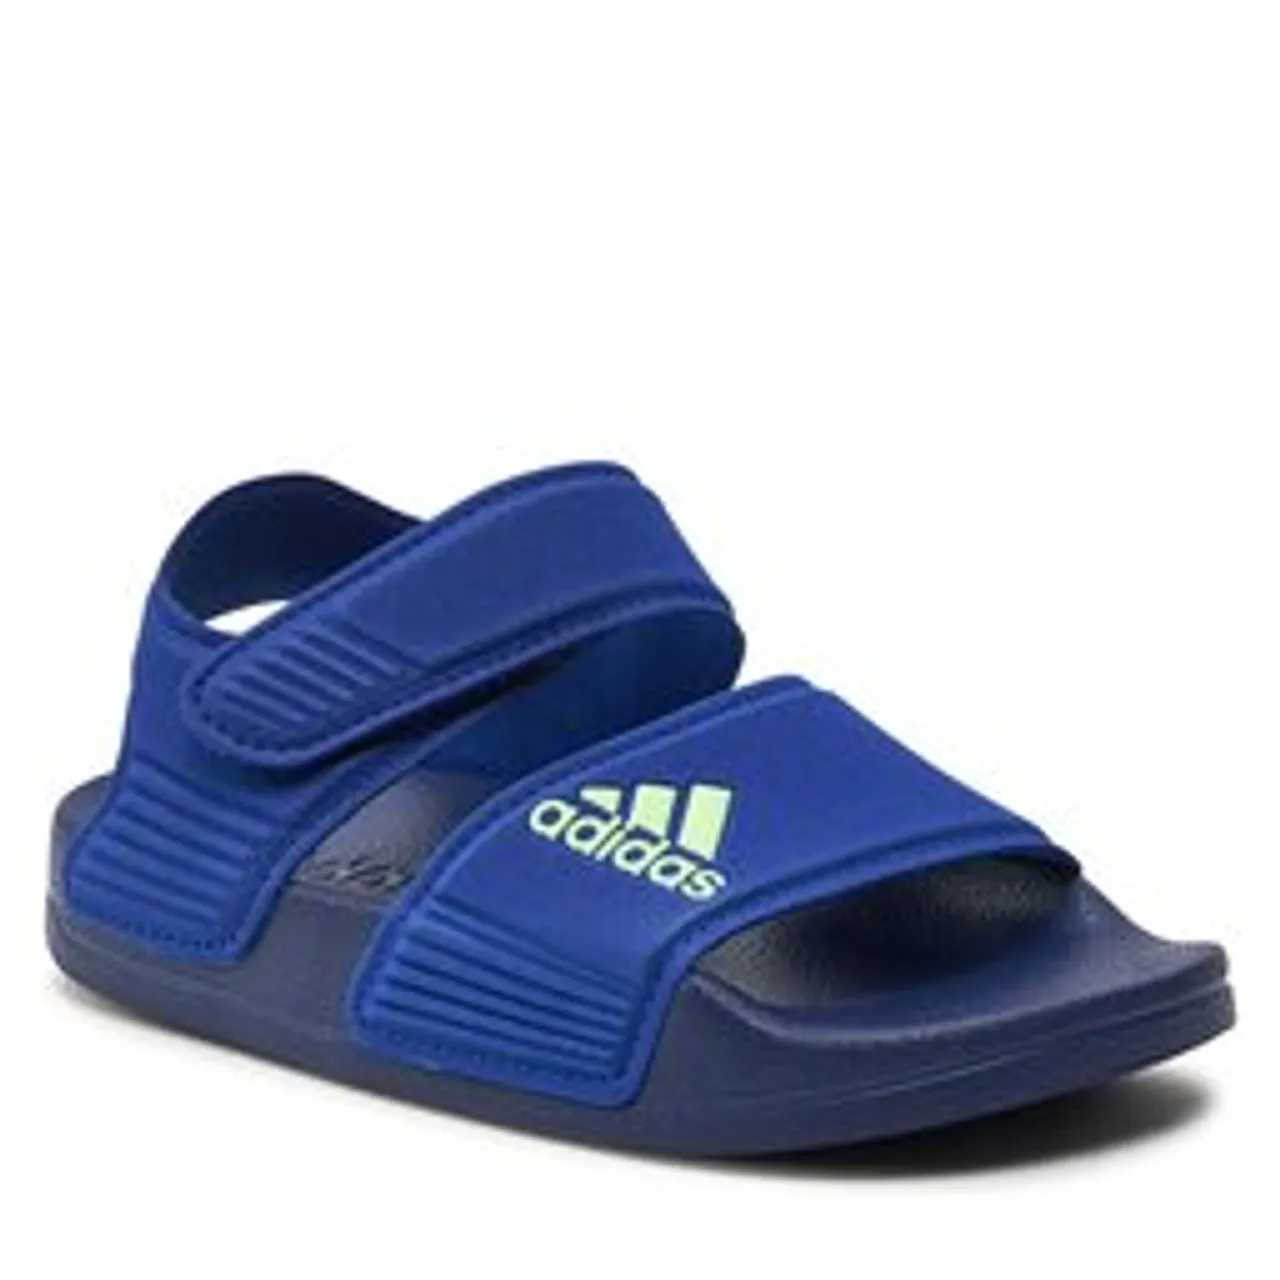 Sandalen adidas adilette Sandals ID2626 Royblu/Grespa/Dkblue